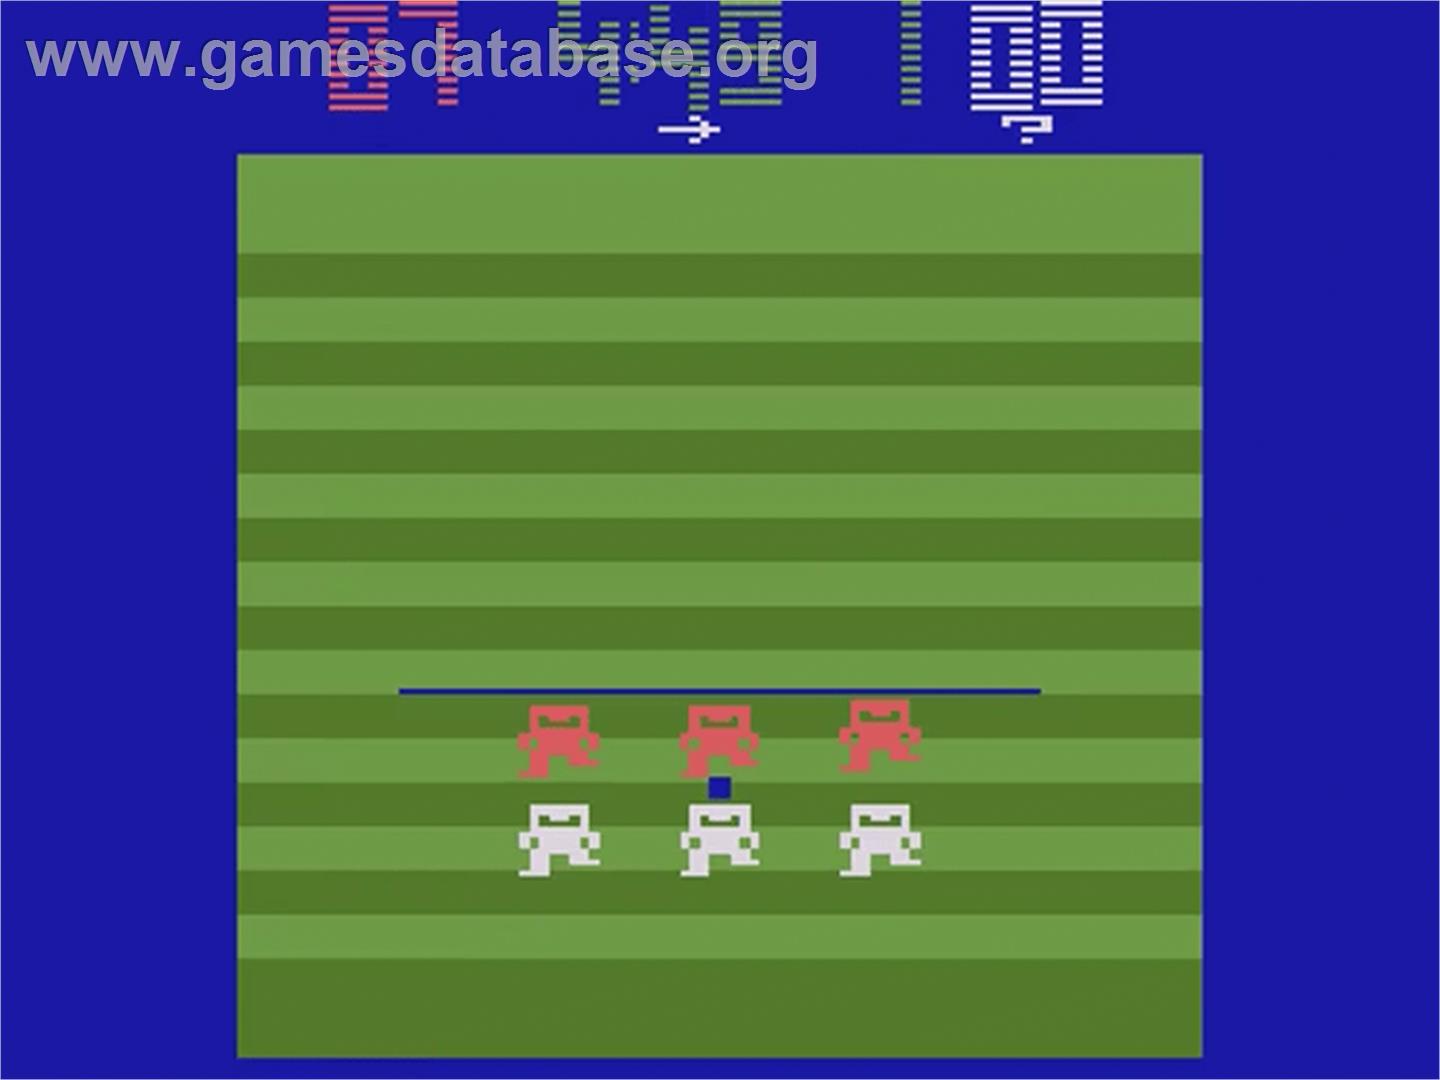 Football - Atari 2600 - Artwork - In Game